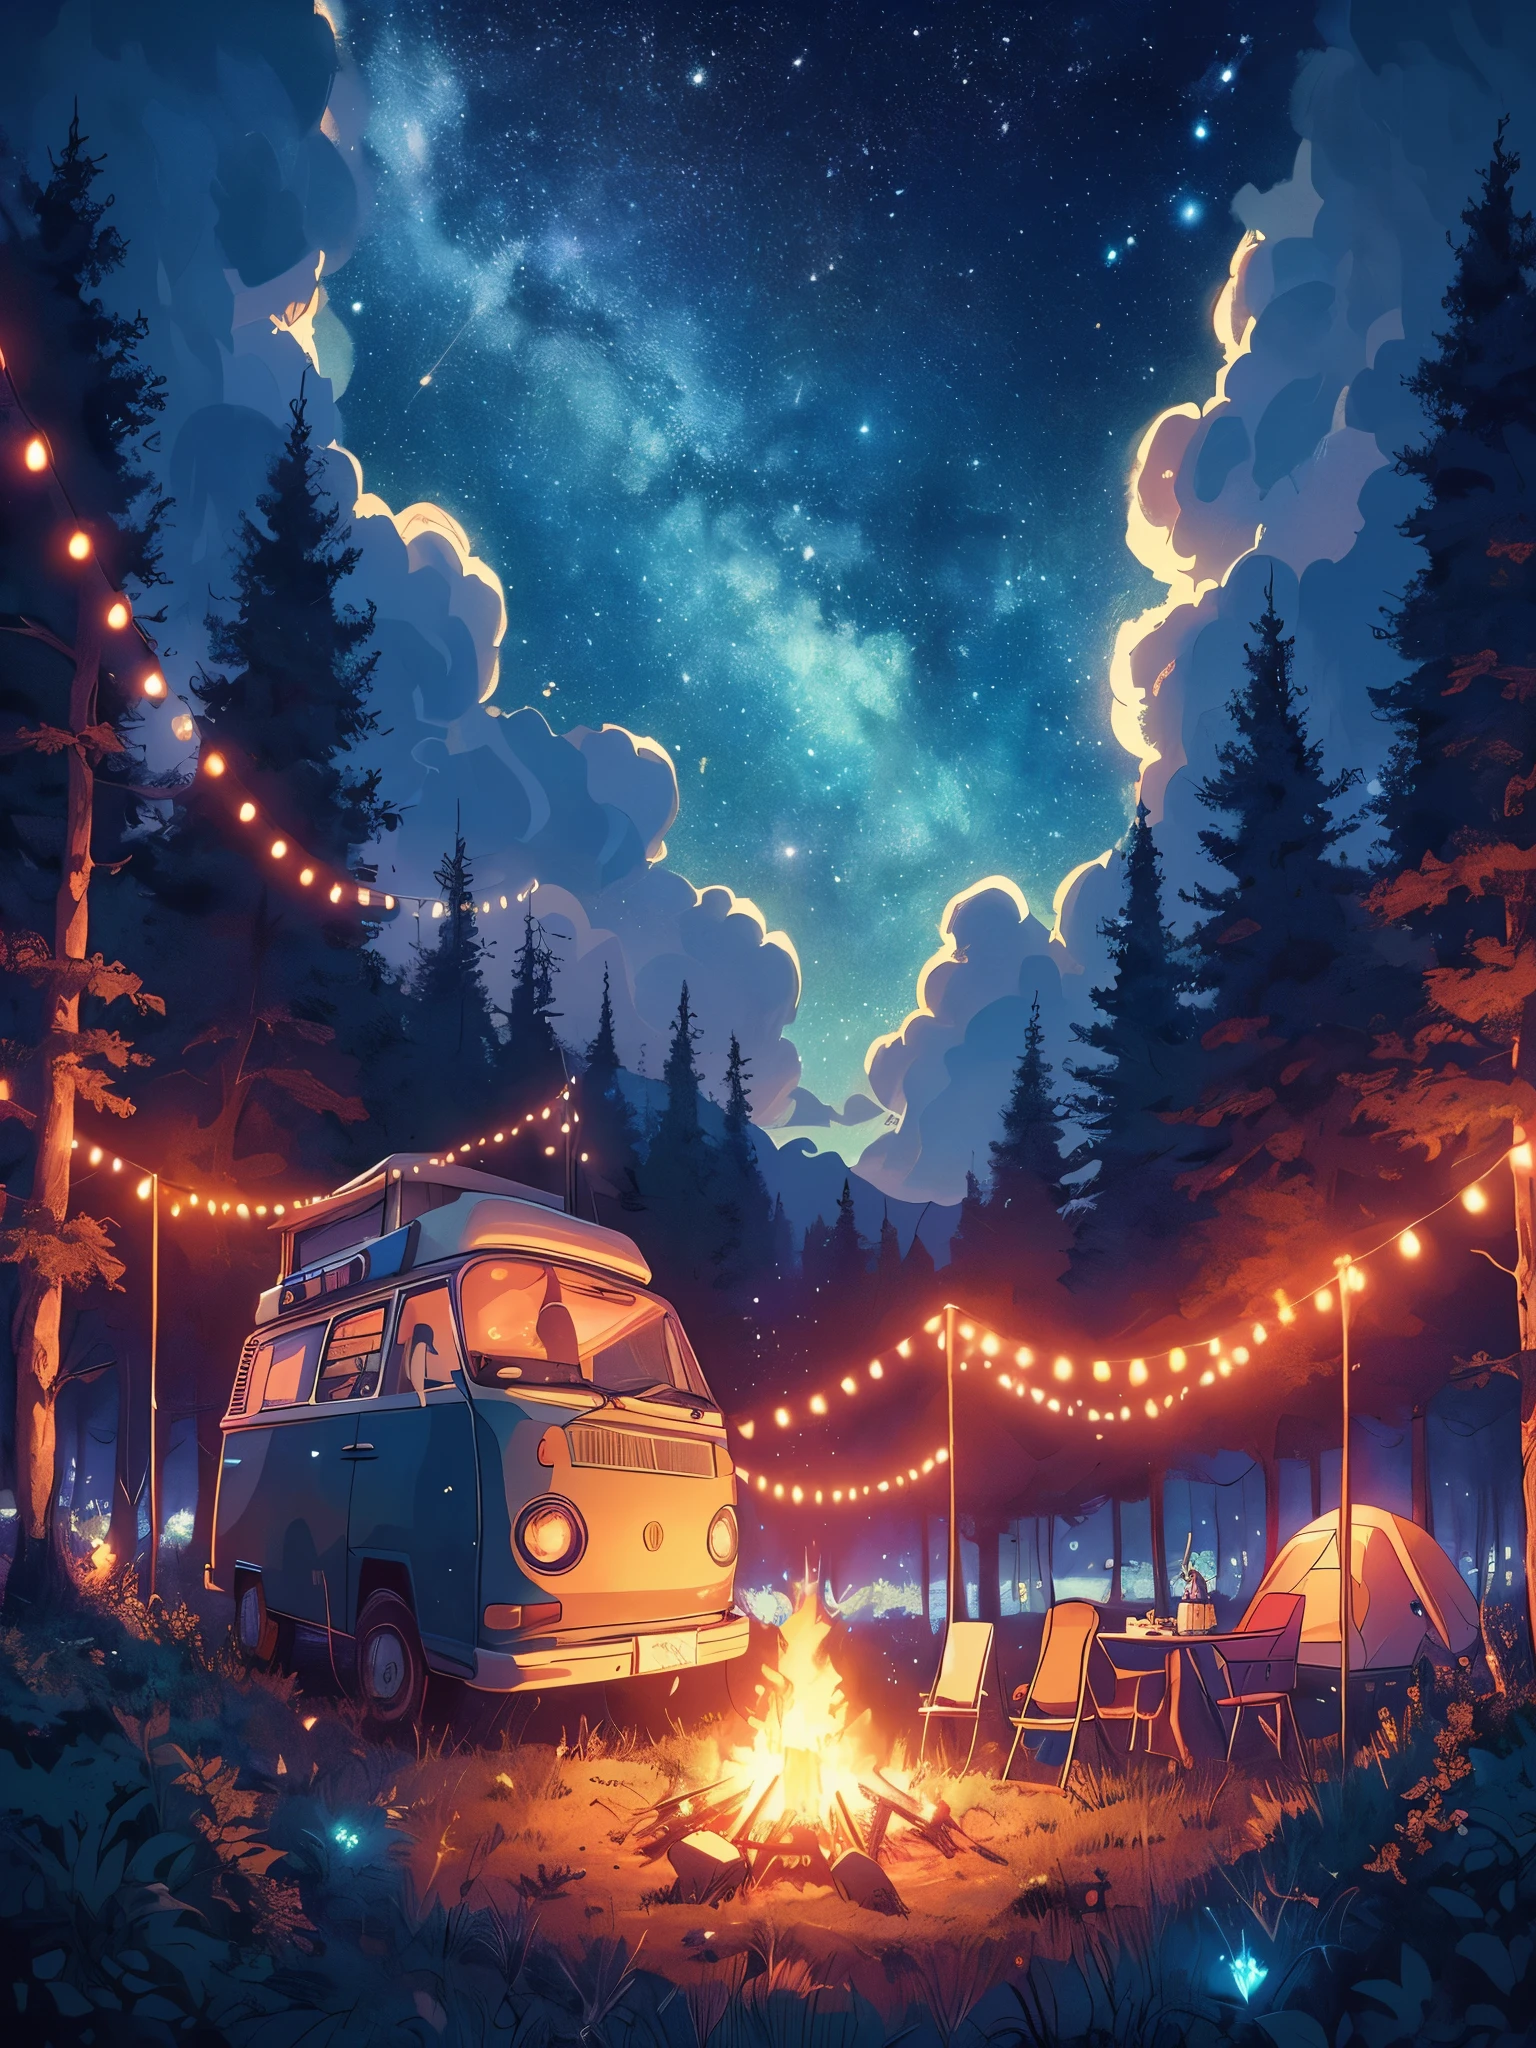 繪製樹林中露營車的動漫海報風格洛菲場景, 童話般的燈光裝飾, 篝火, 燒烤, 星空, 荒野, 茂密的森林, 夜晚, 美麗的調色板, 充滿活力的飽和色彩, 傑作, 電影般的多雲天空, 沒有人類